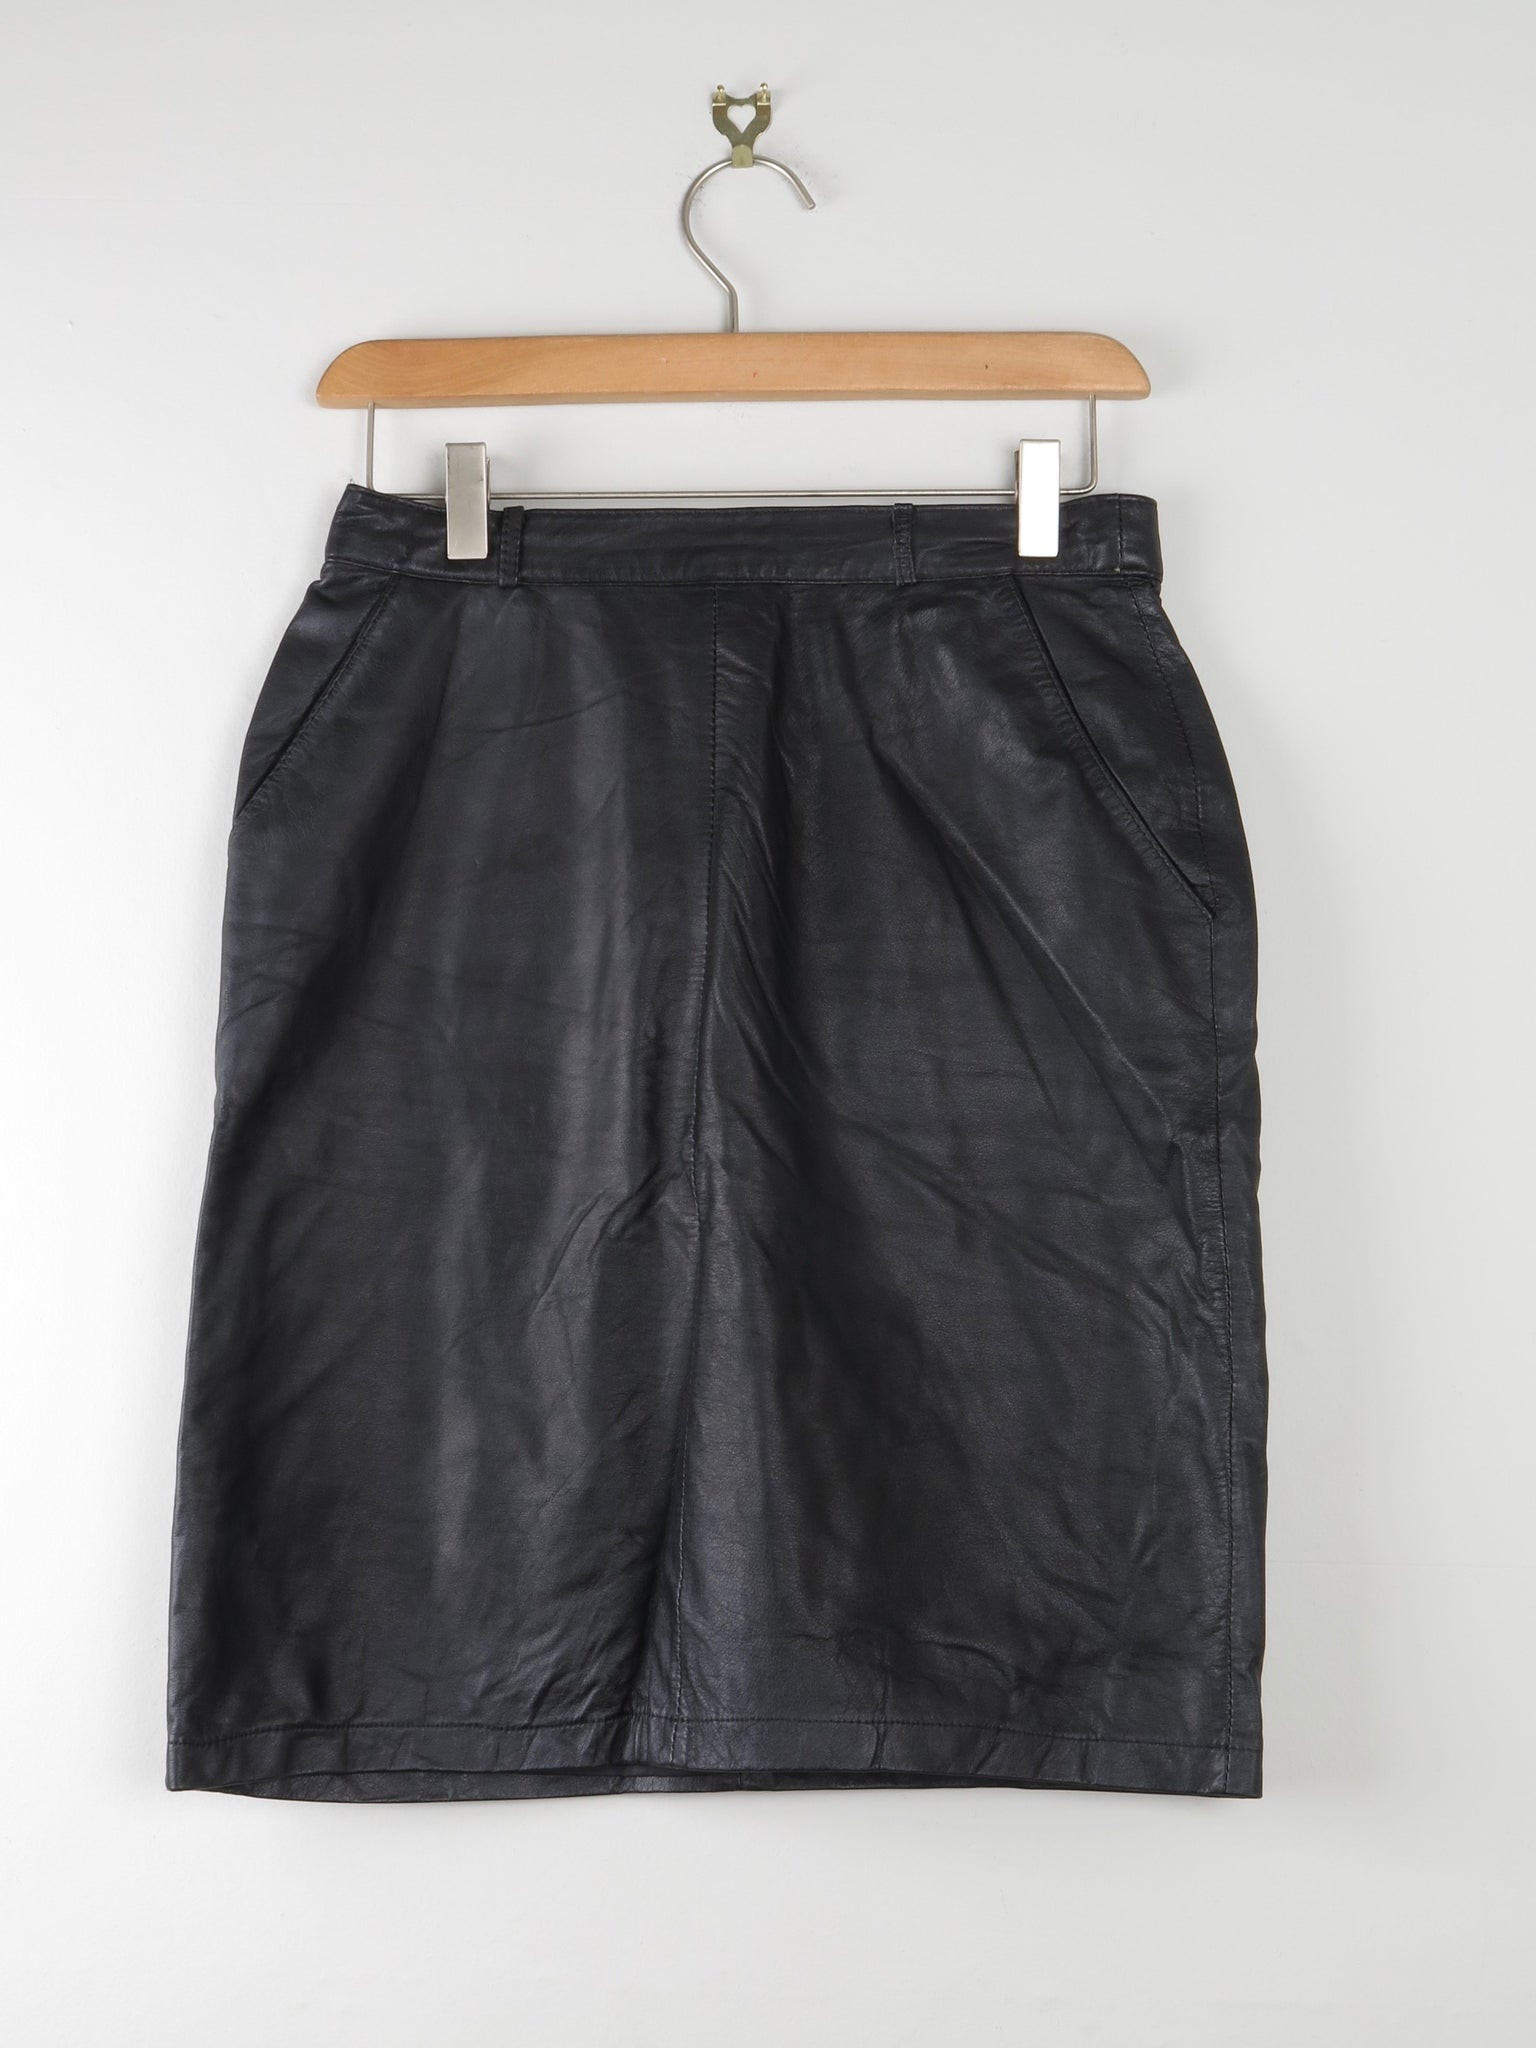 Black Leather Skirt 27"/S - The Harlequin